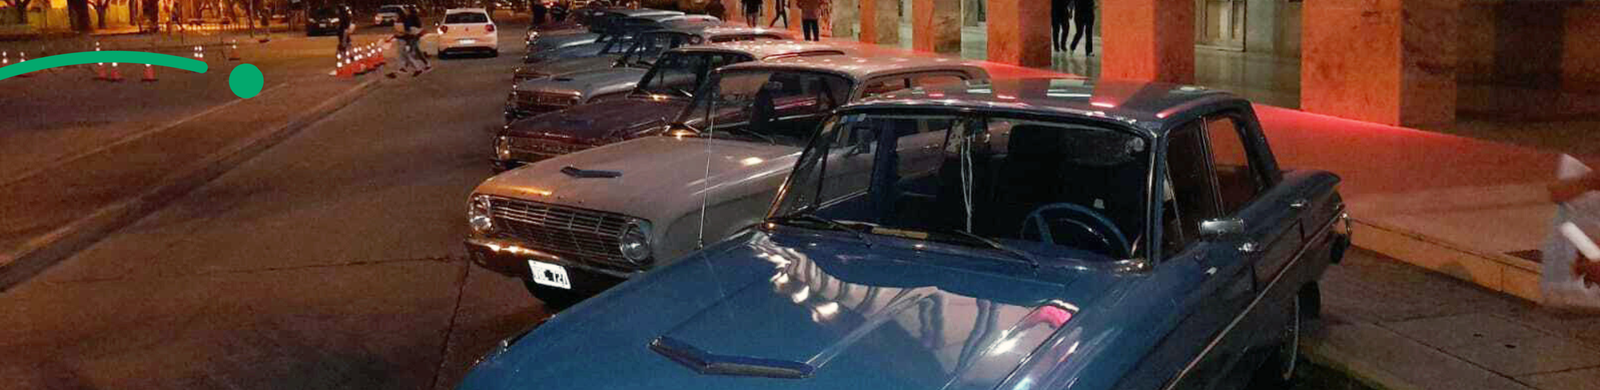 Exposición de autos antigüos